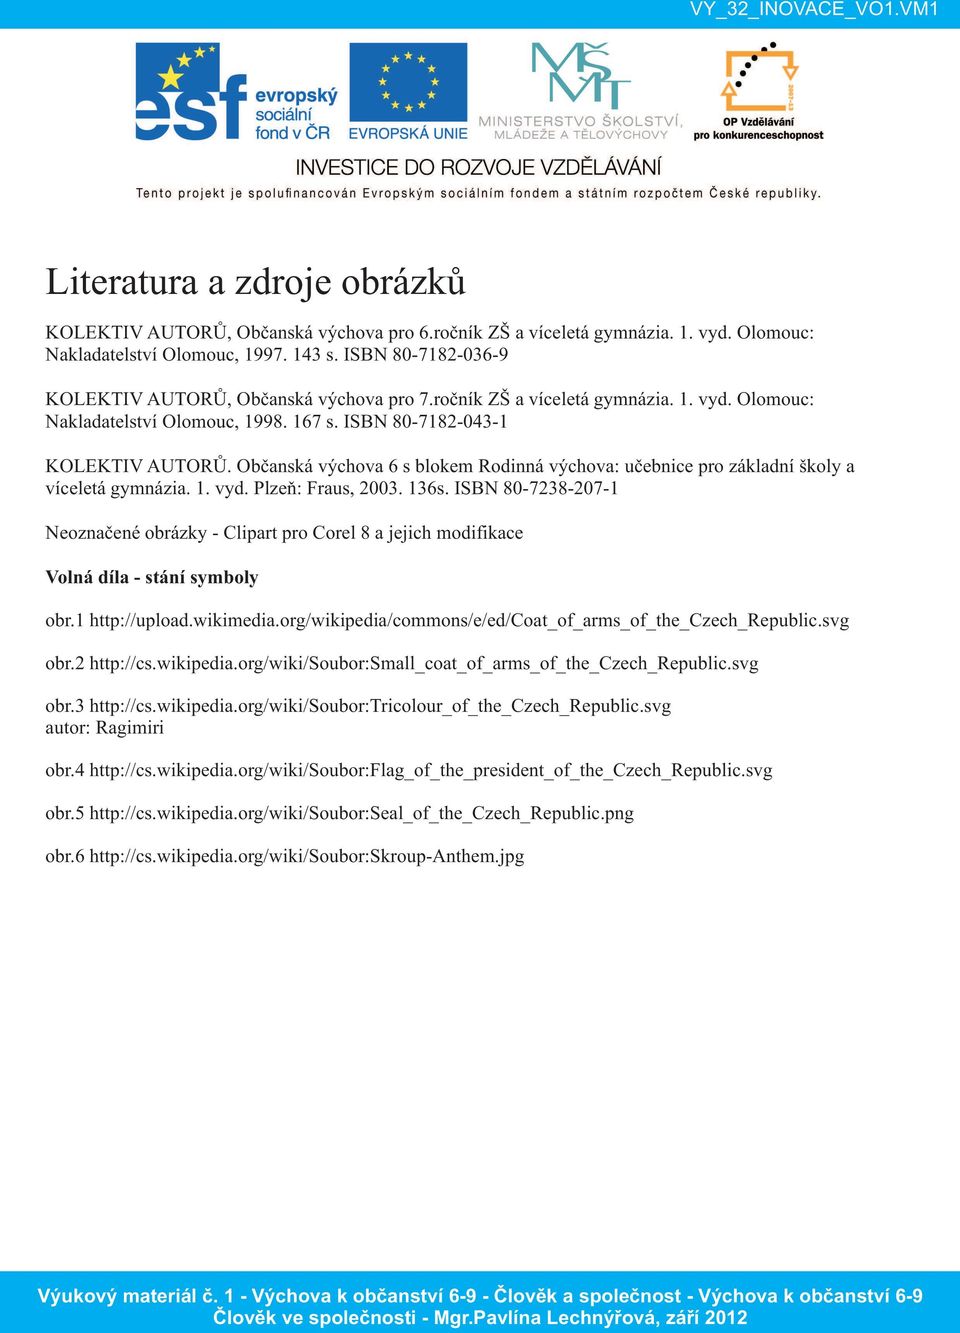 Občanská výchova 6 s blokem Rodinná výchova: učebnice pro základní školy a víceletá gymnázia. 1. vyd. Plzeň: Fraus, 2003. 136s.